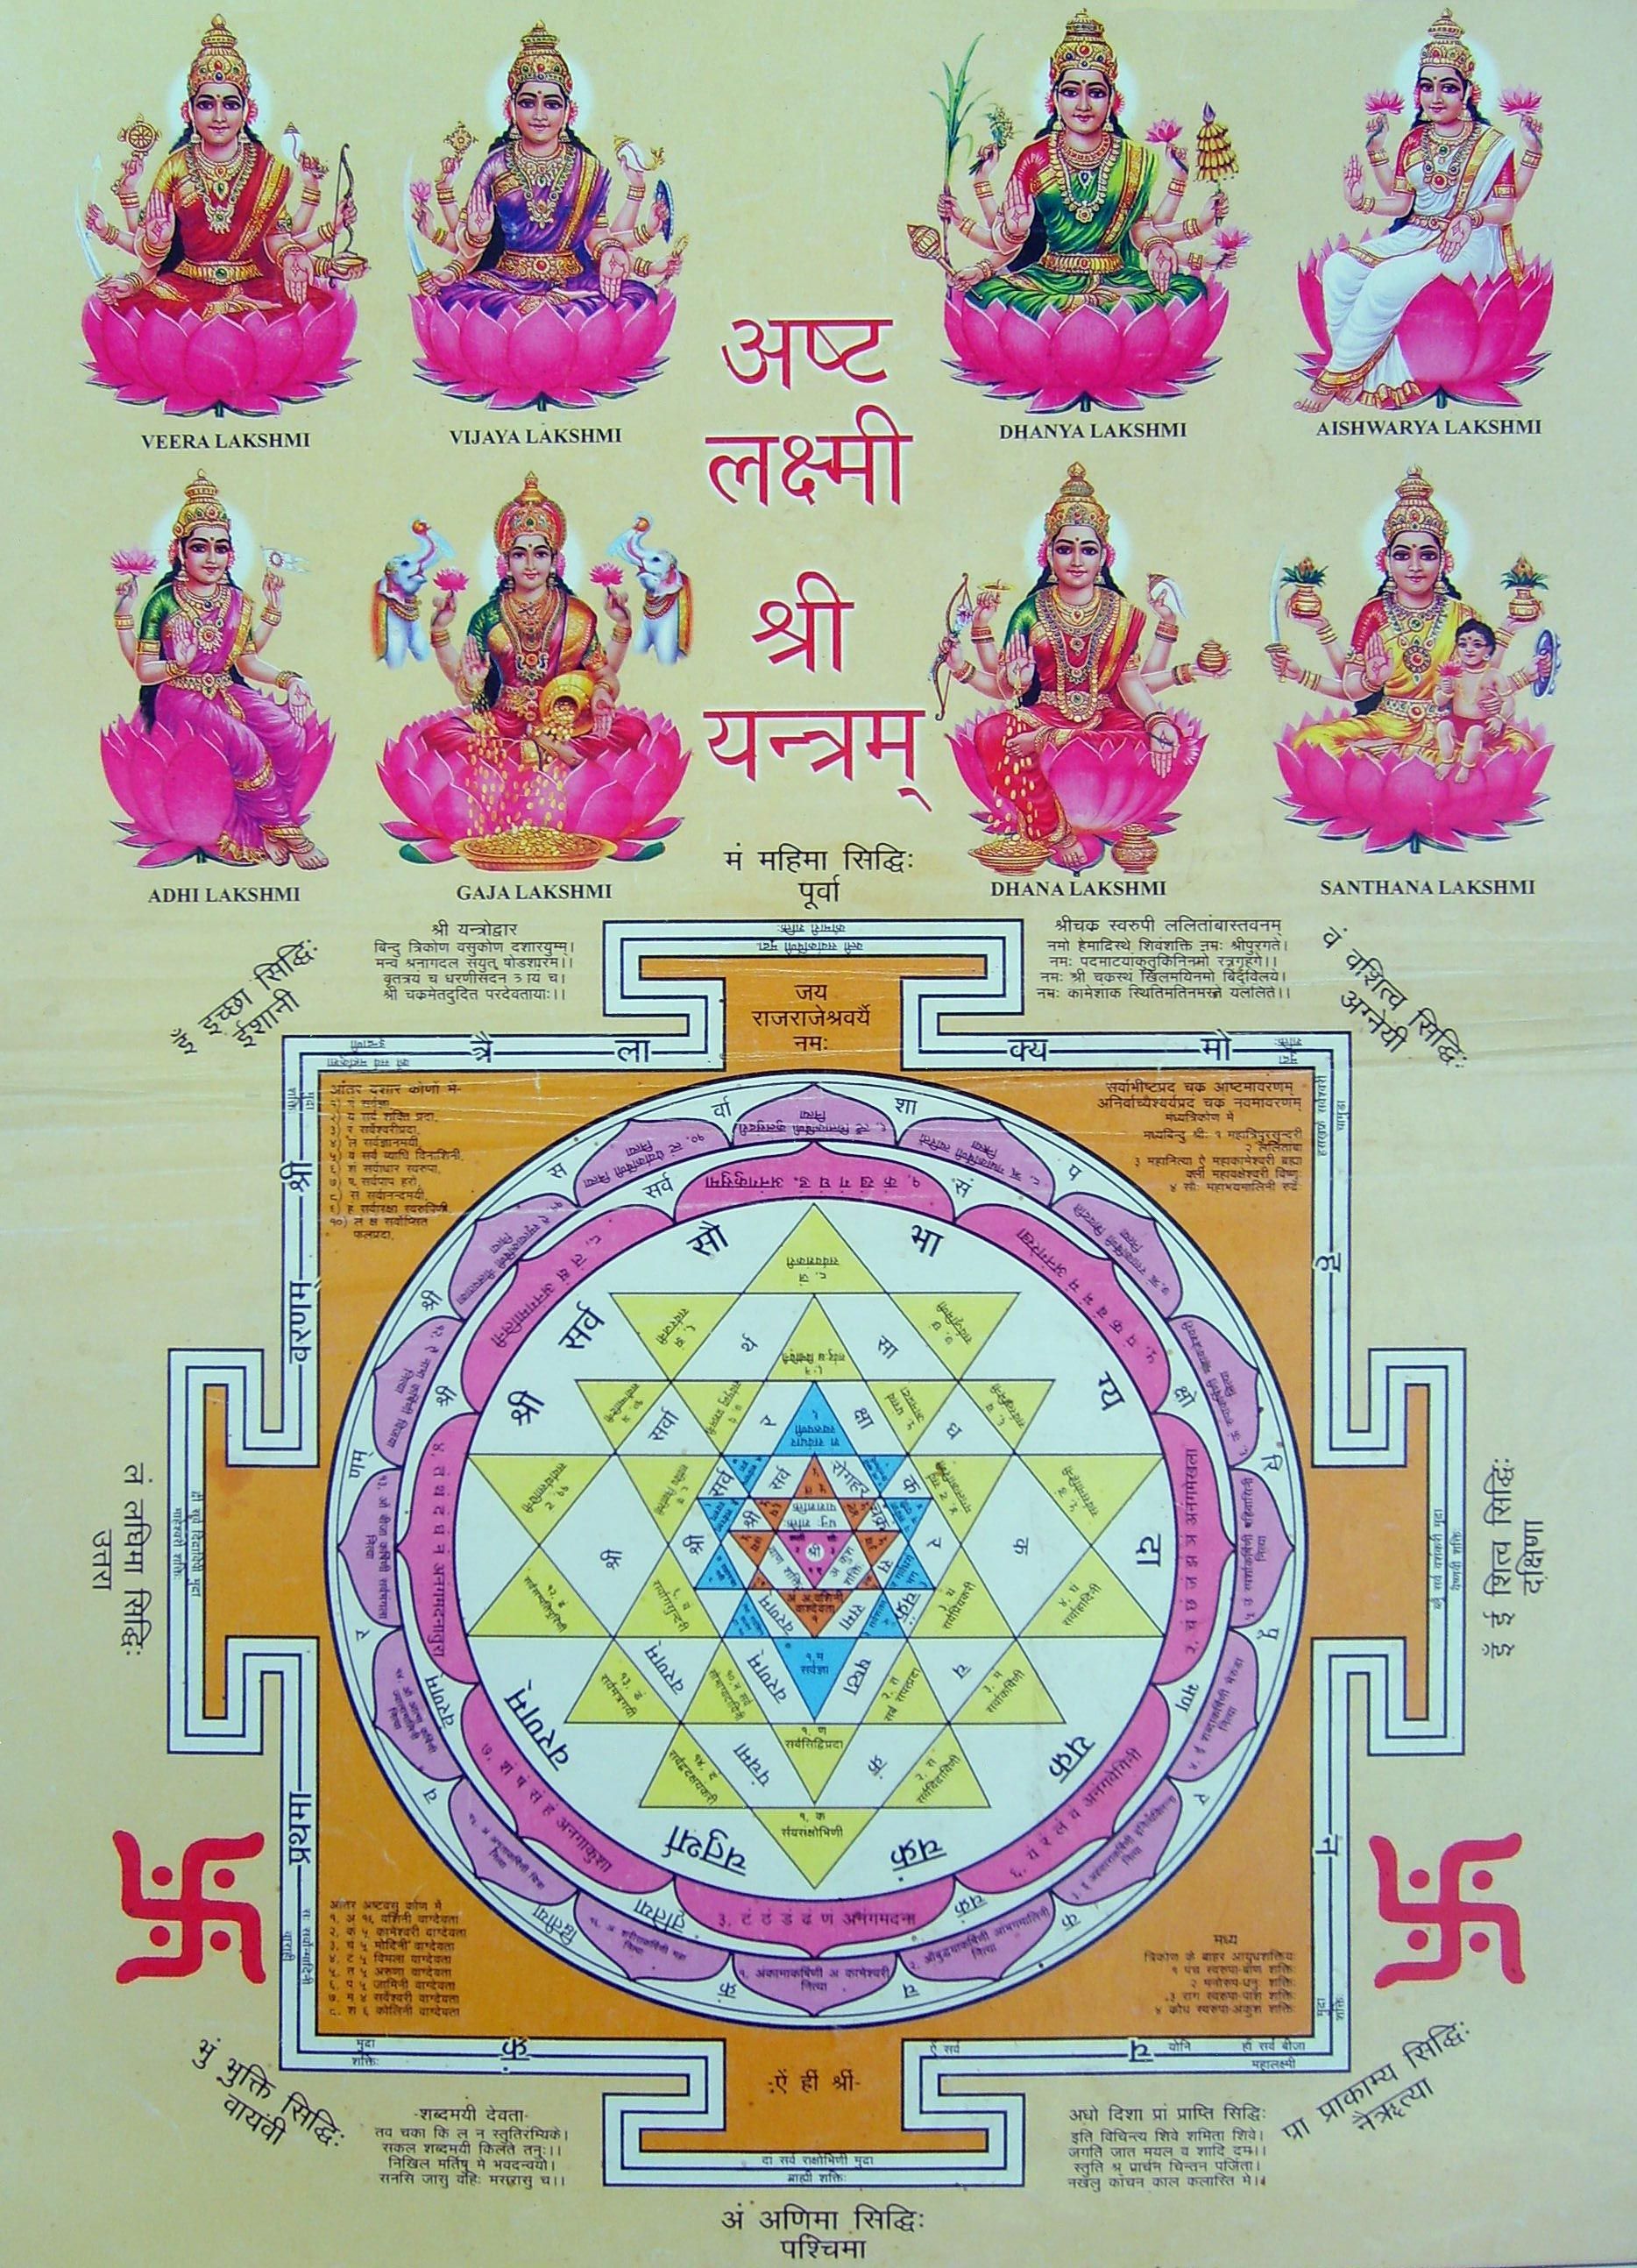 Mahalakshmi (Laxmi) Mantra & Shri Yantra Giving Om Shreem